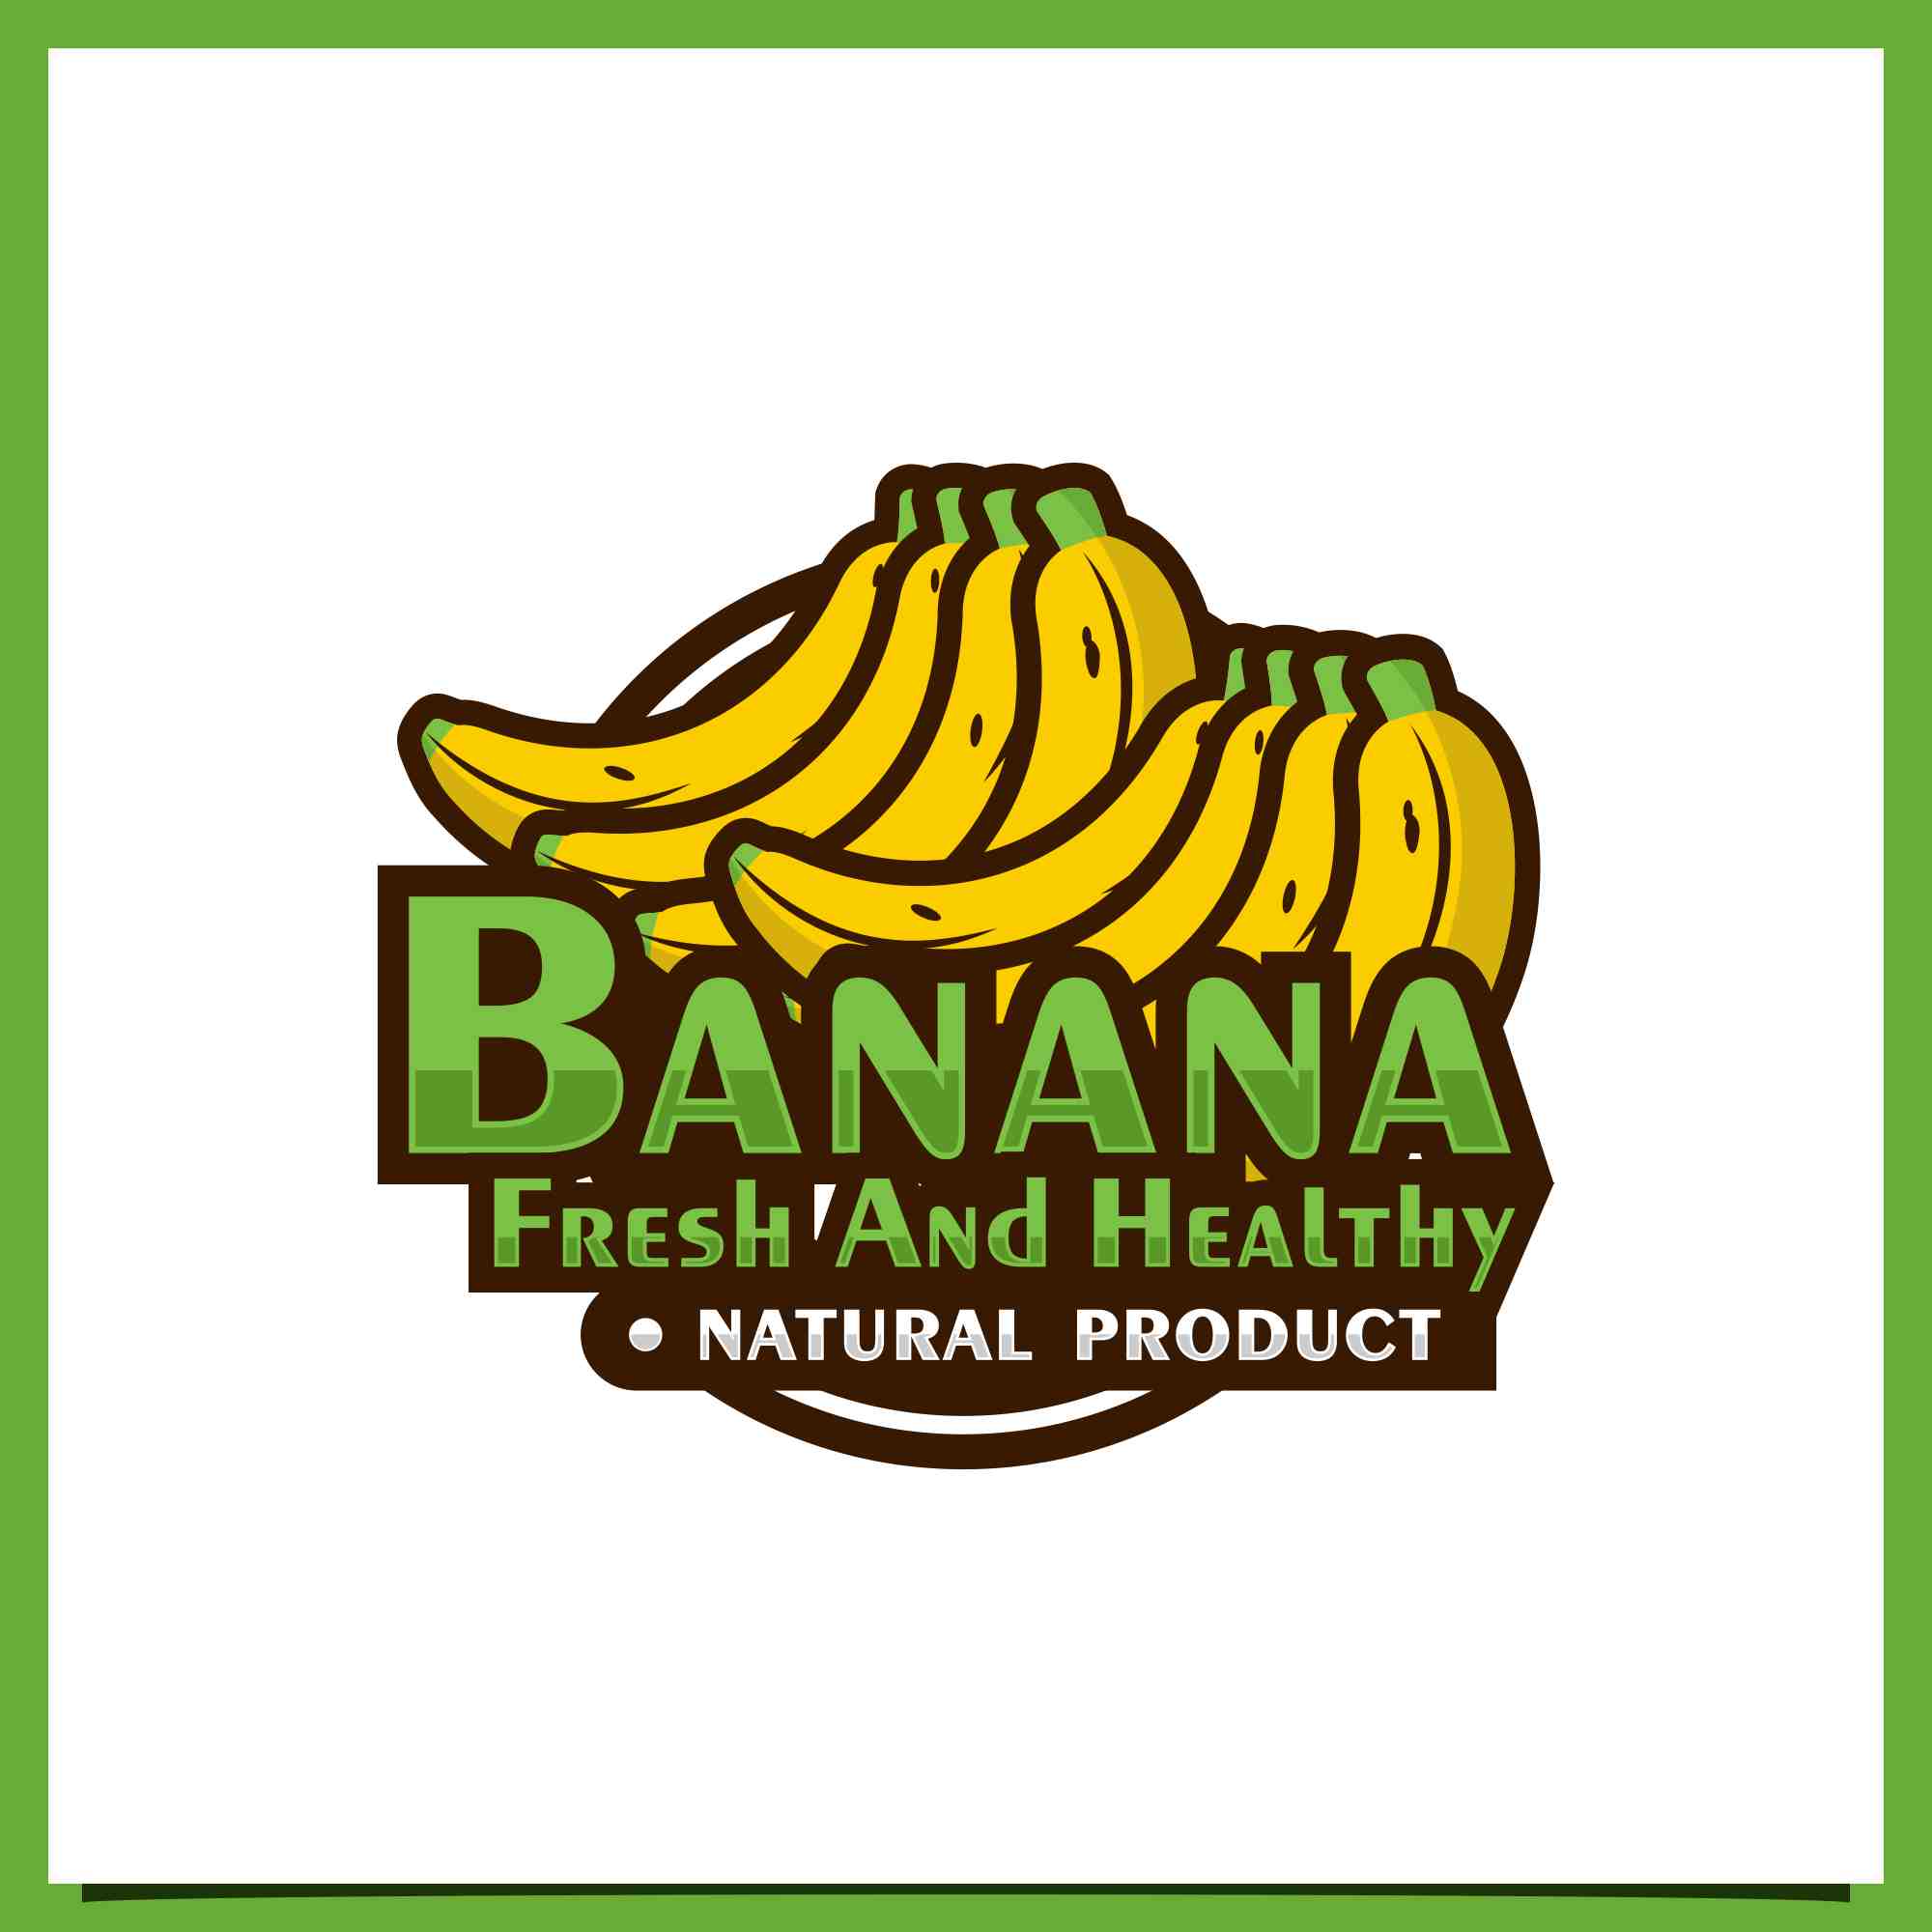 Set Banana vector badge logo design collection - $10 preview image.